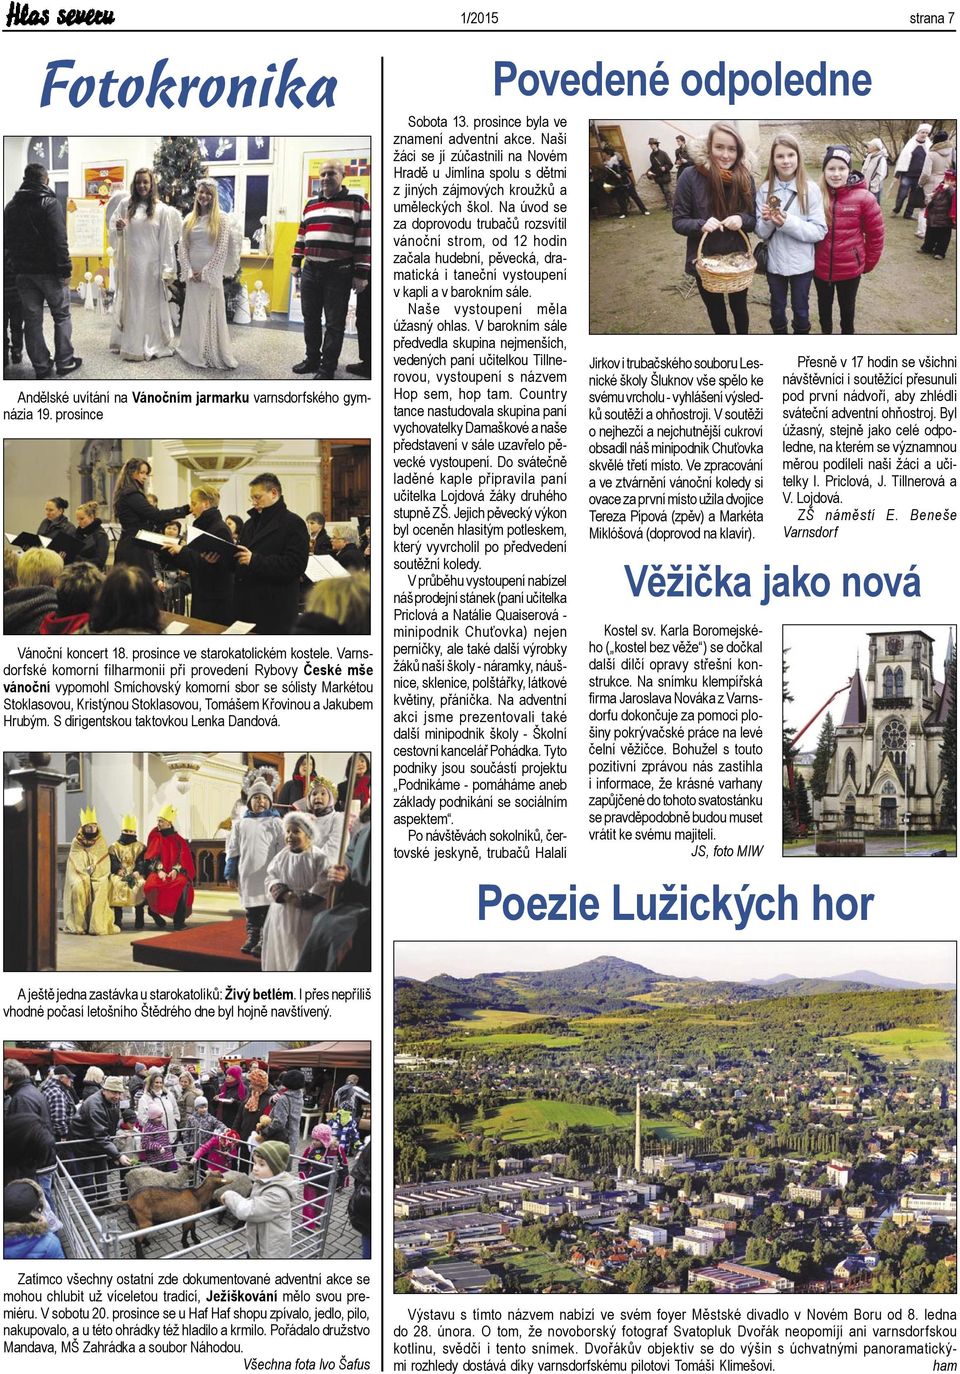 S dirigentskou taktovkou Lenka Dandová. 1/2015 strana 7 Sobota 13. prosince byla ve znamení adventní akce.